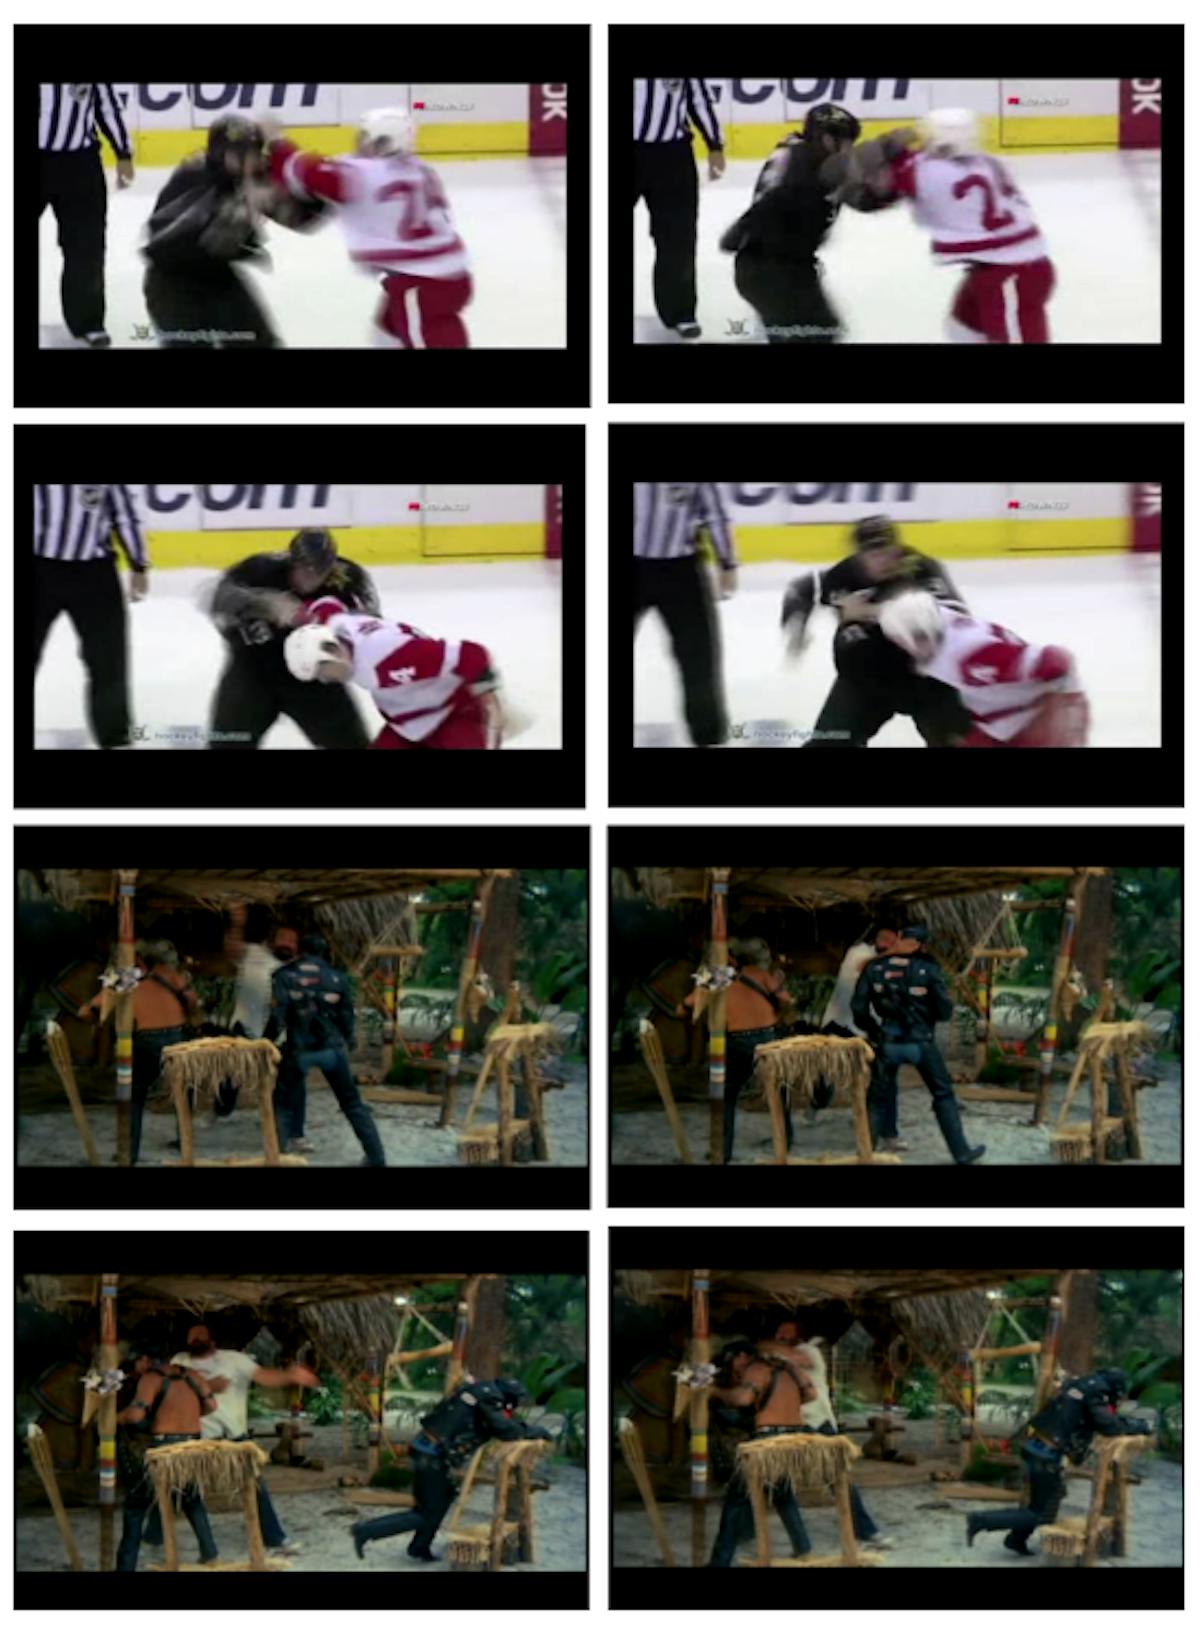 Figura 4.1: Exemplos de frames dos vídeos de luta nos conjuntos de dados de hóquei (parte superior) e filmes de ação (parte inferior).